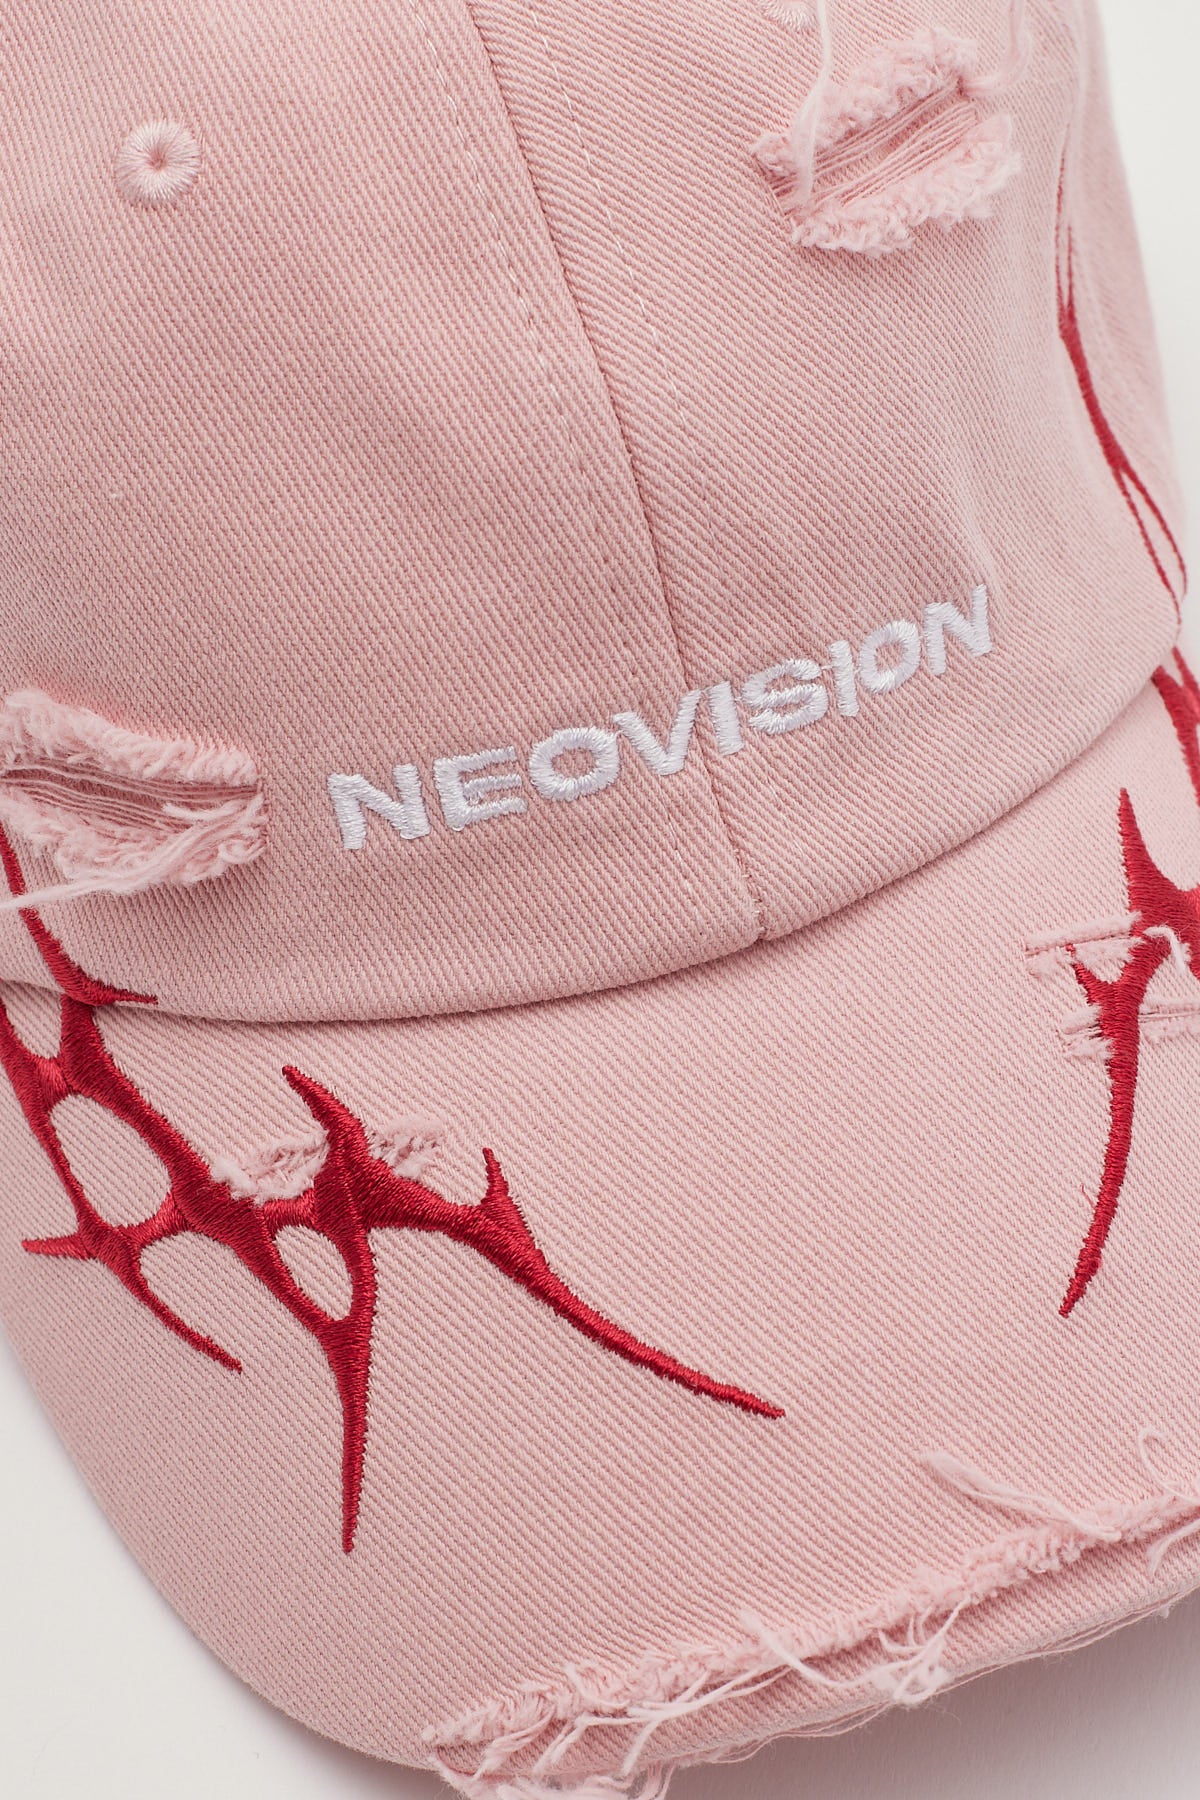 Neovision Platinum Distressed Dad Cap Pink